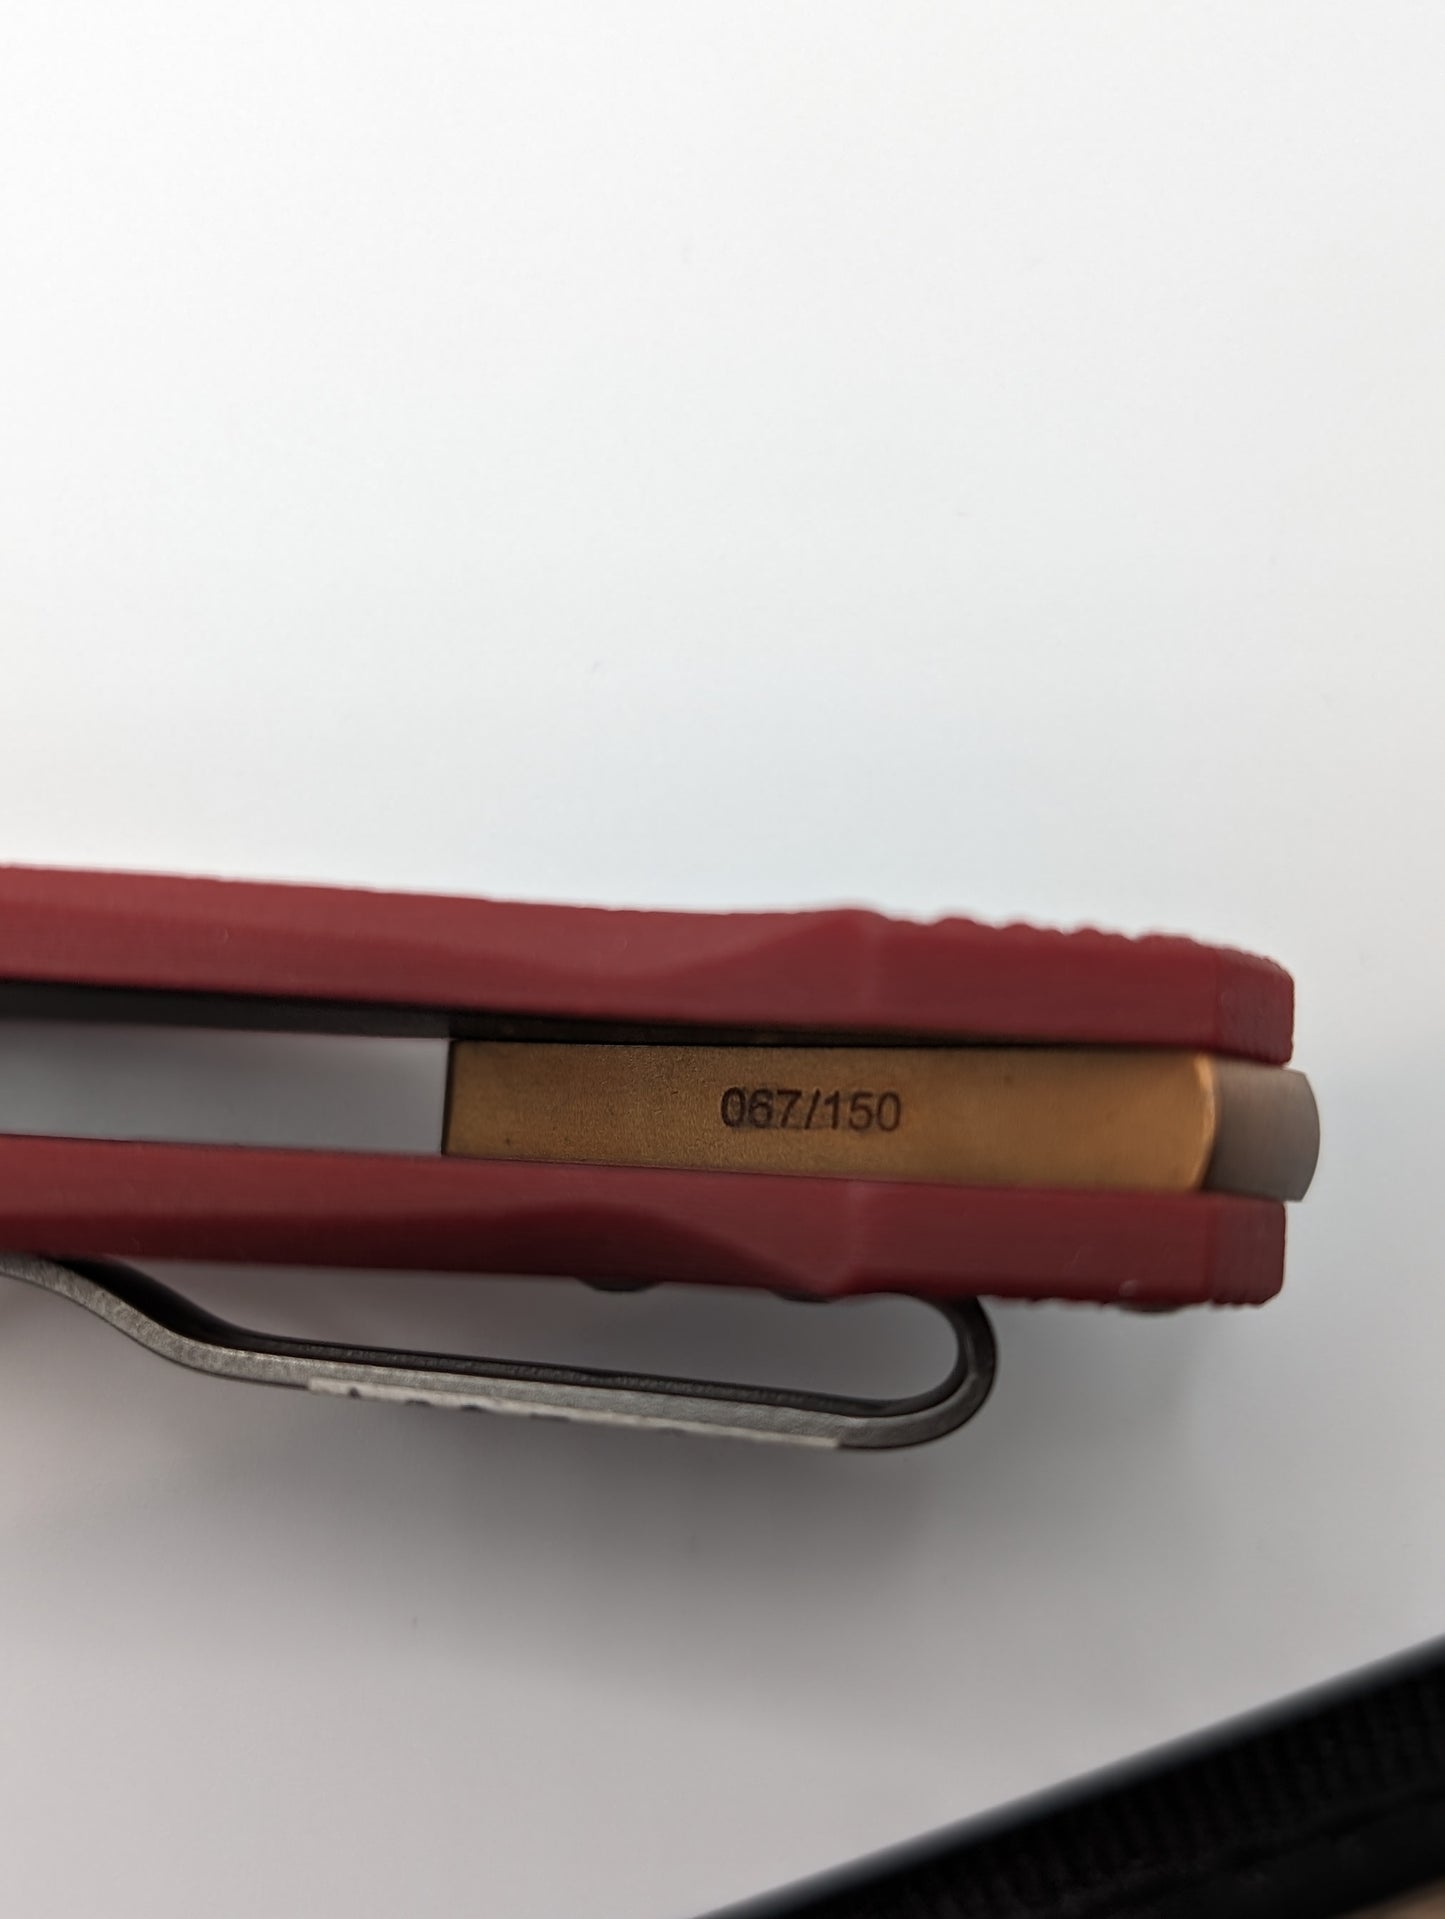 Viper Vox Katla Limited Edition G10 Red Folding Knife 67 of 150